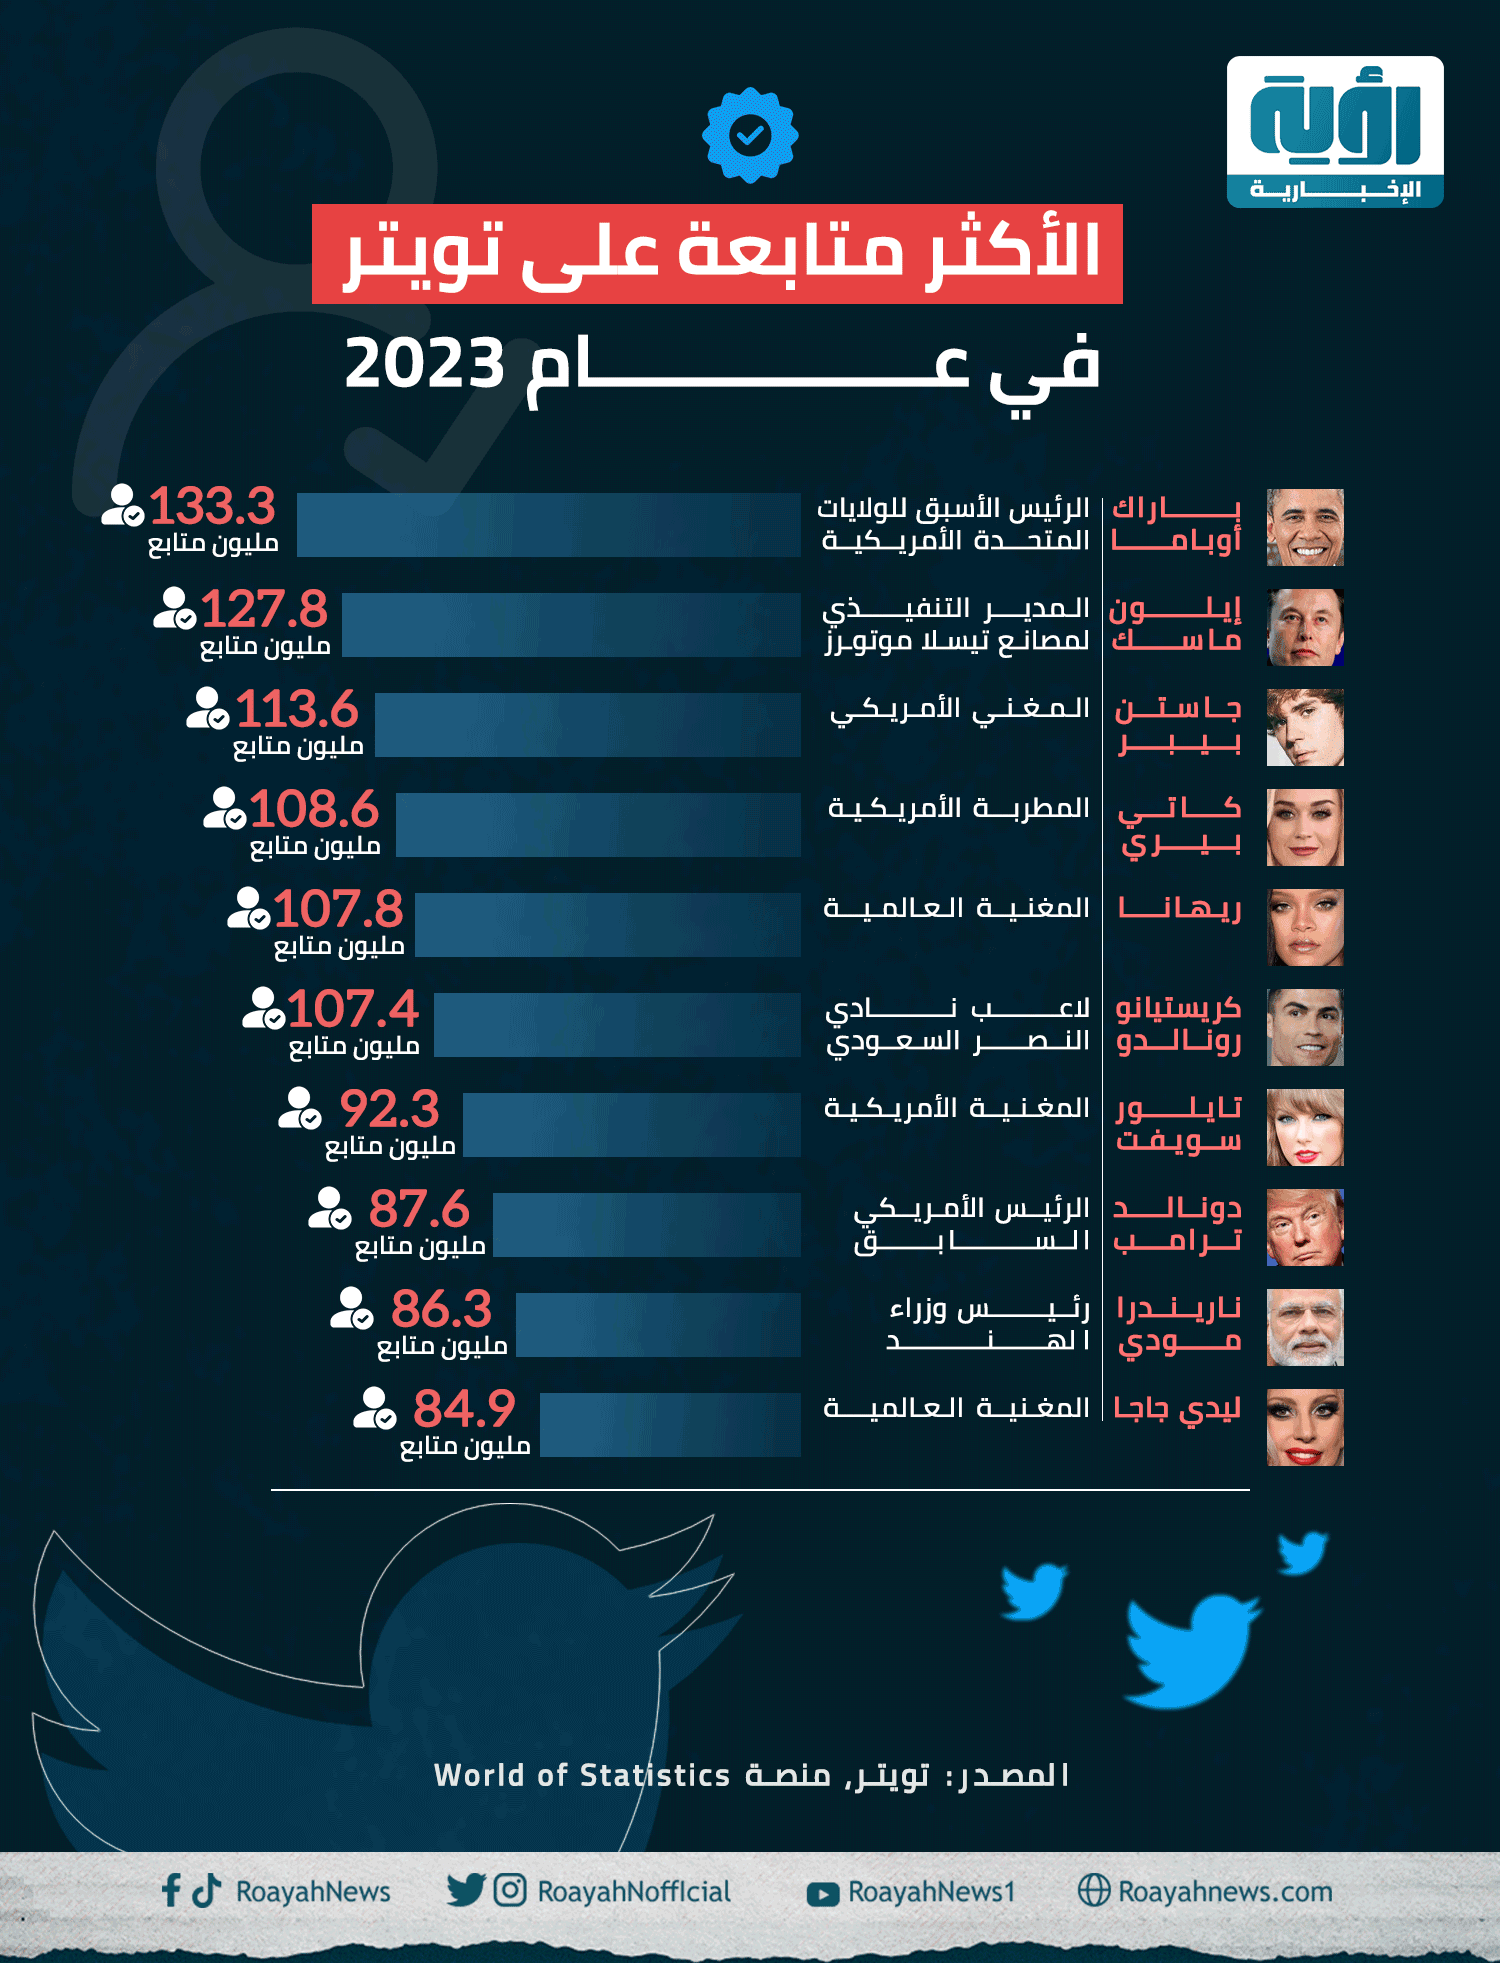 الأكثر متابعة على تويتر في عام 2023 